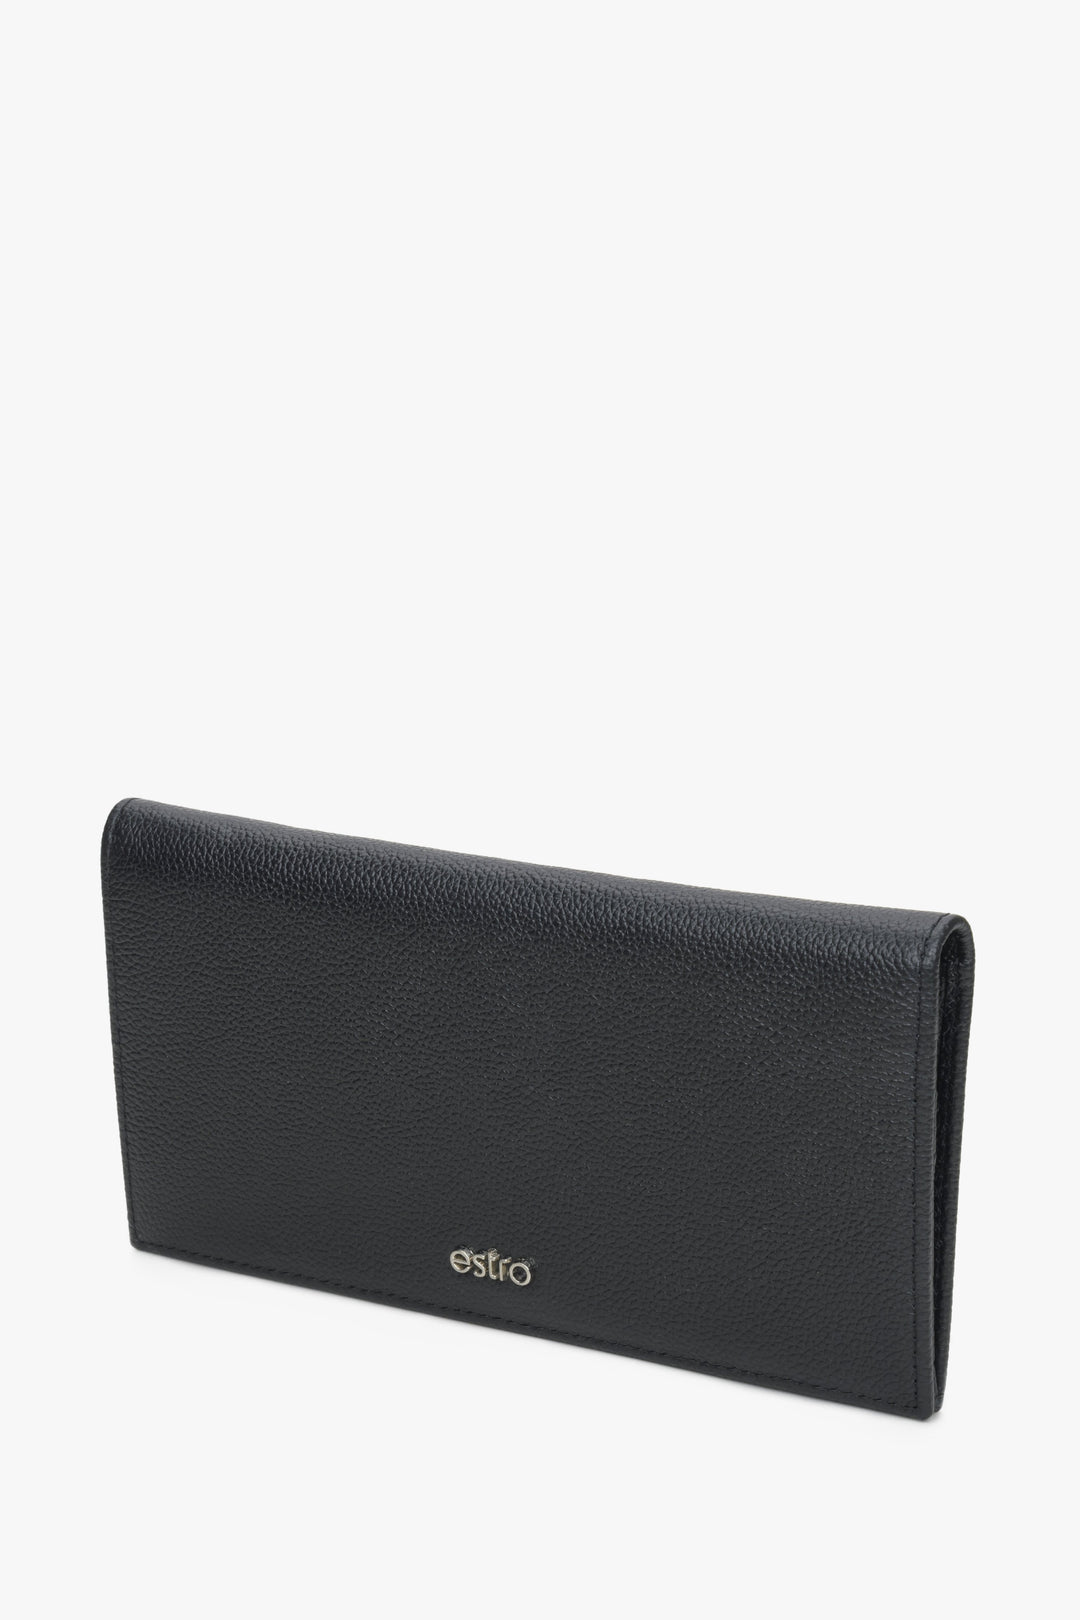 Estro men's spacious wallet by Estro.